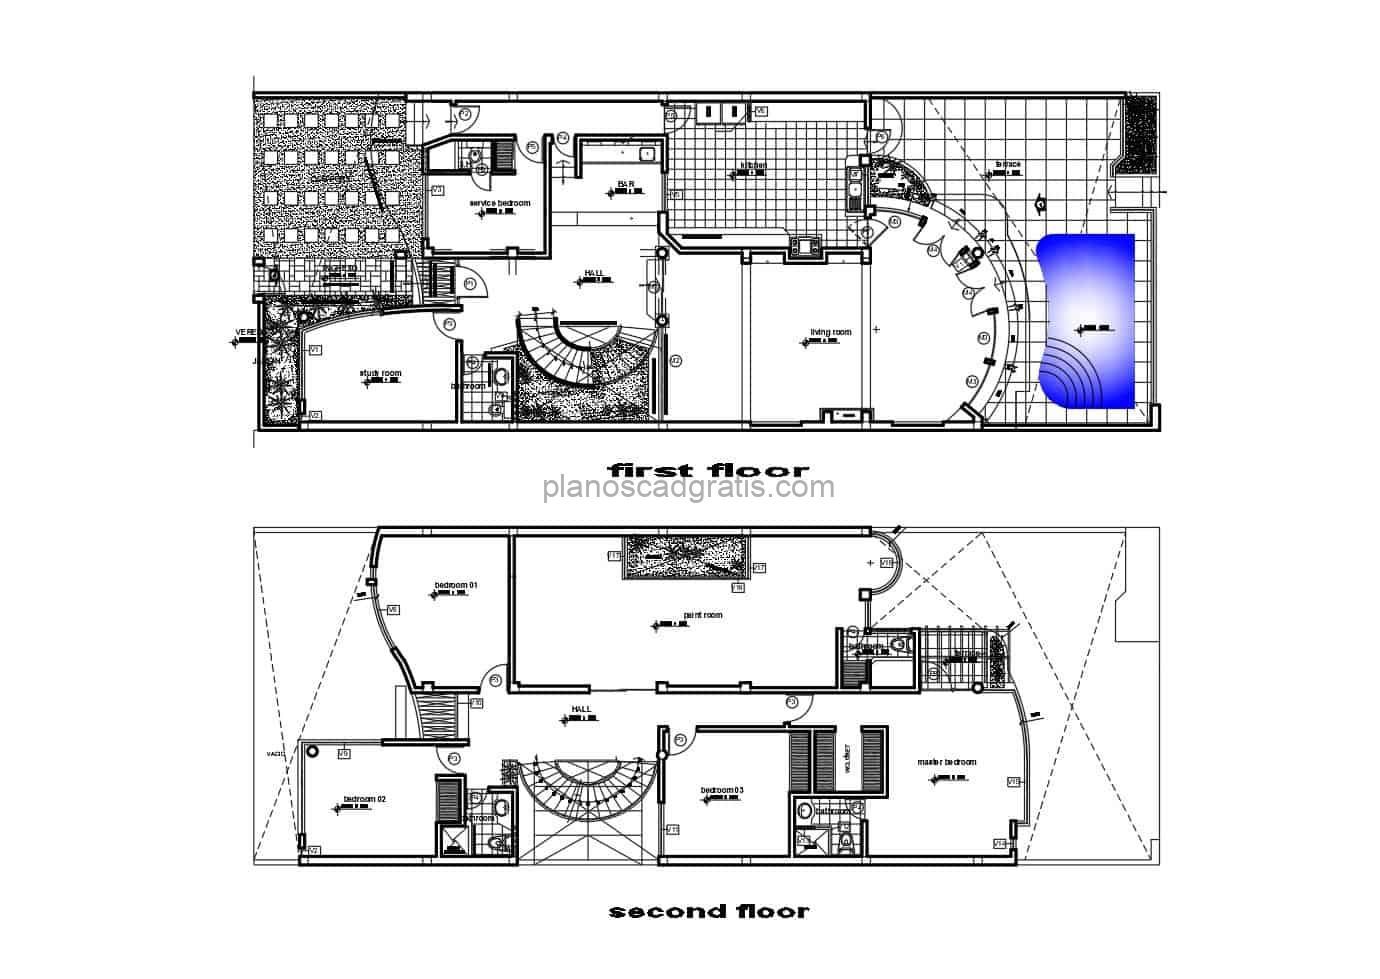 diseño arquitectonico de casa de dos niveles con piscina, planos autocad en formato dwg para descarga gratis, casa rectangular con cuatro habitaciones